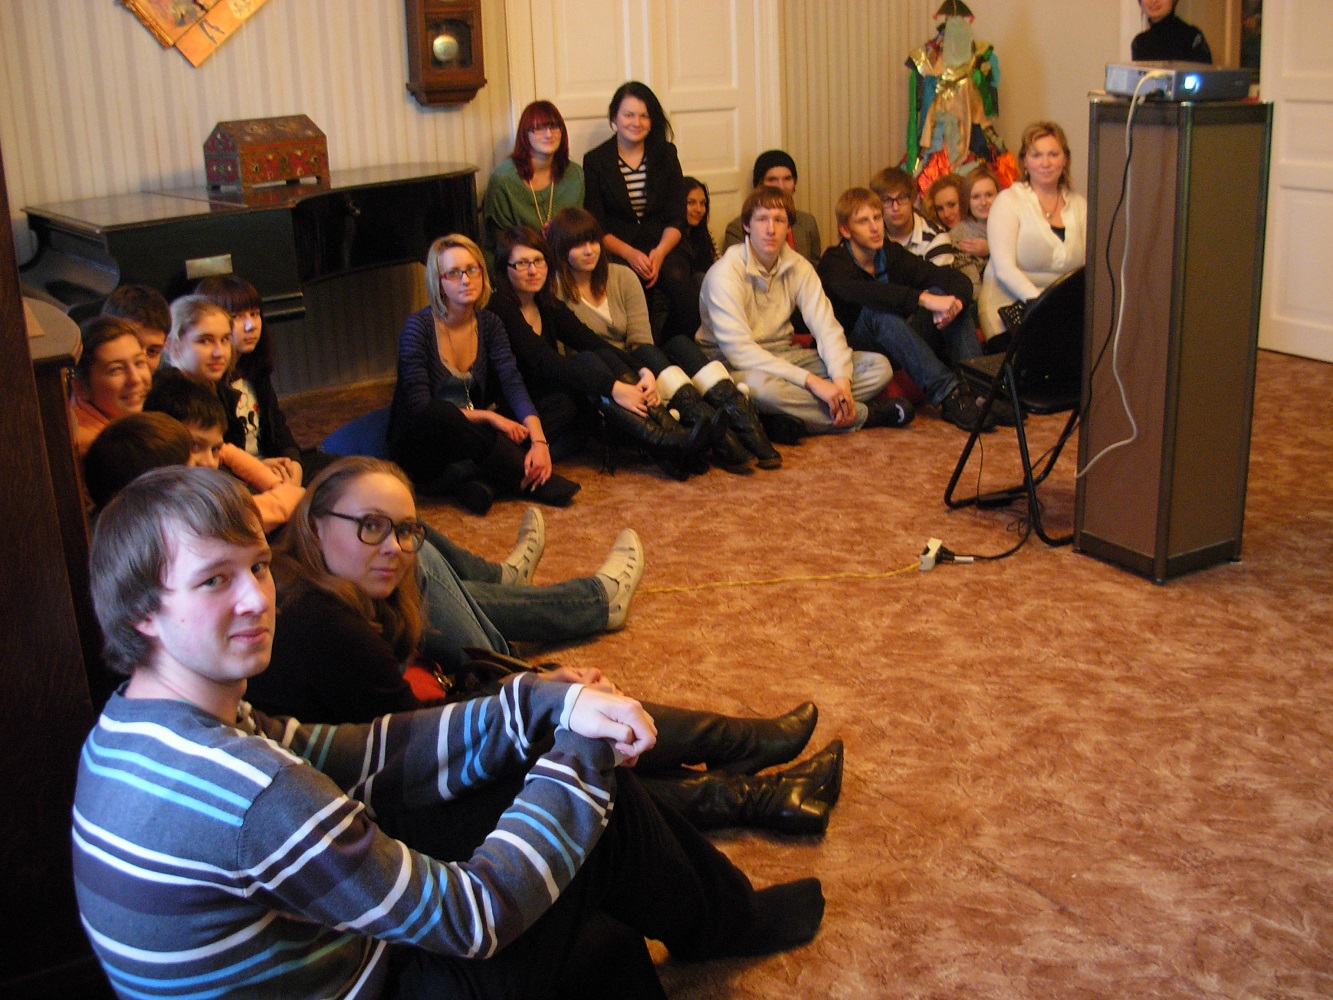 Pae Gümnaasiumi õpilaste koos huvijuhu A. Luikoga A. Säreva korterimuuseumi külastus. Märts 2009.